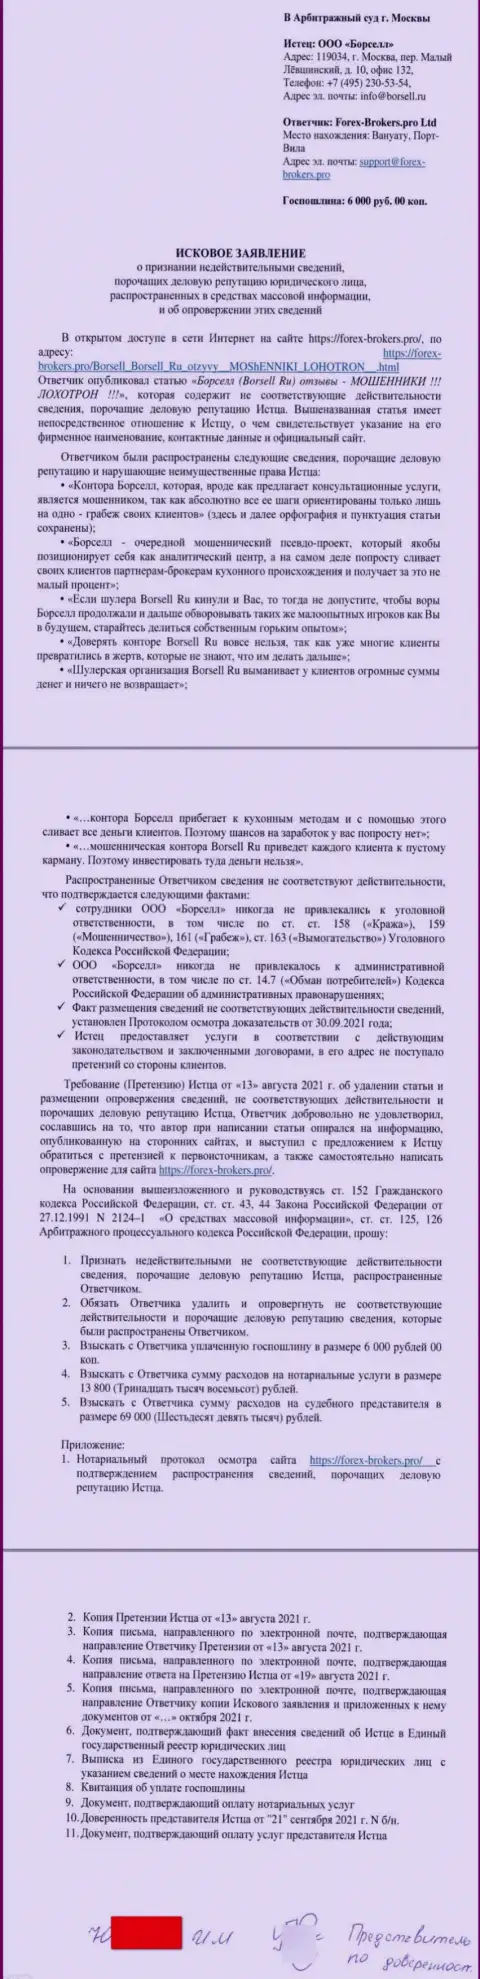 Само заявление в суд от некого представителя аналитической компании ООО БОРСЕЛЛ